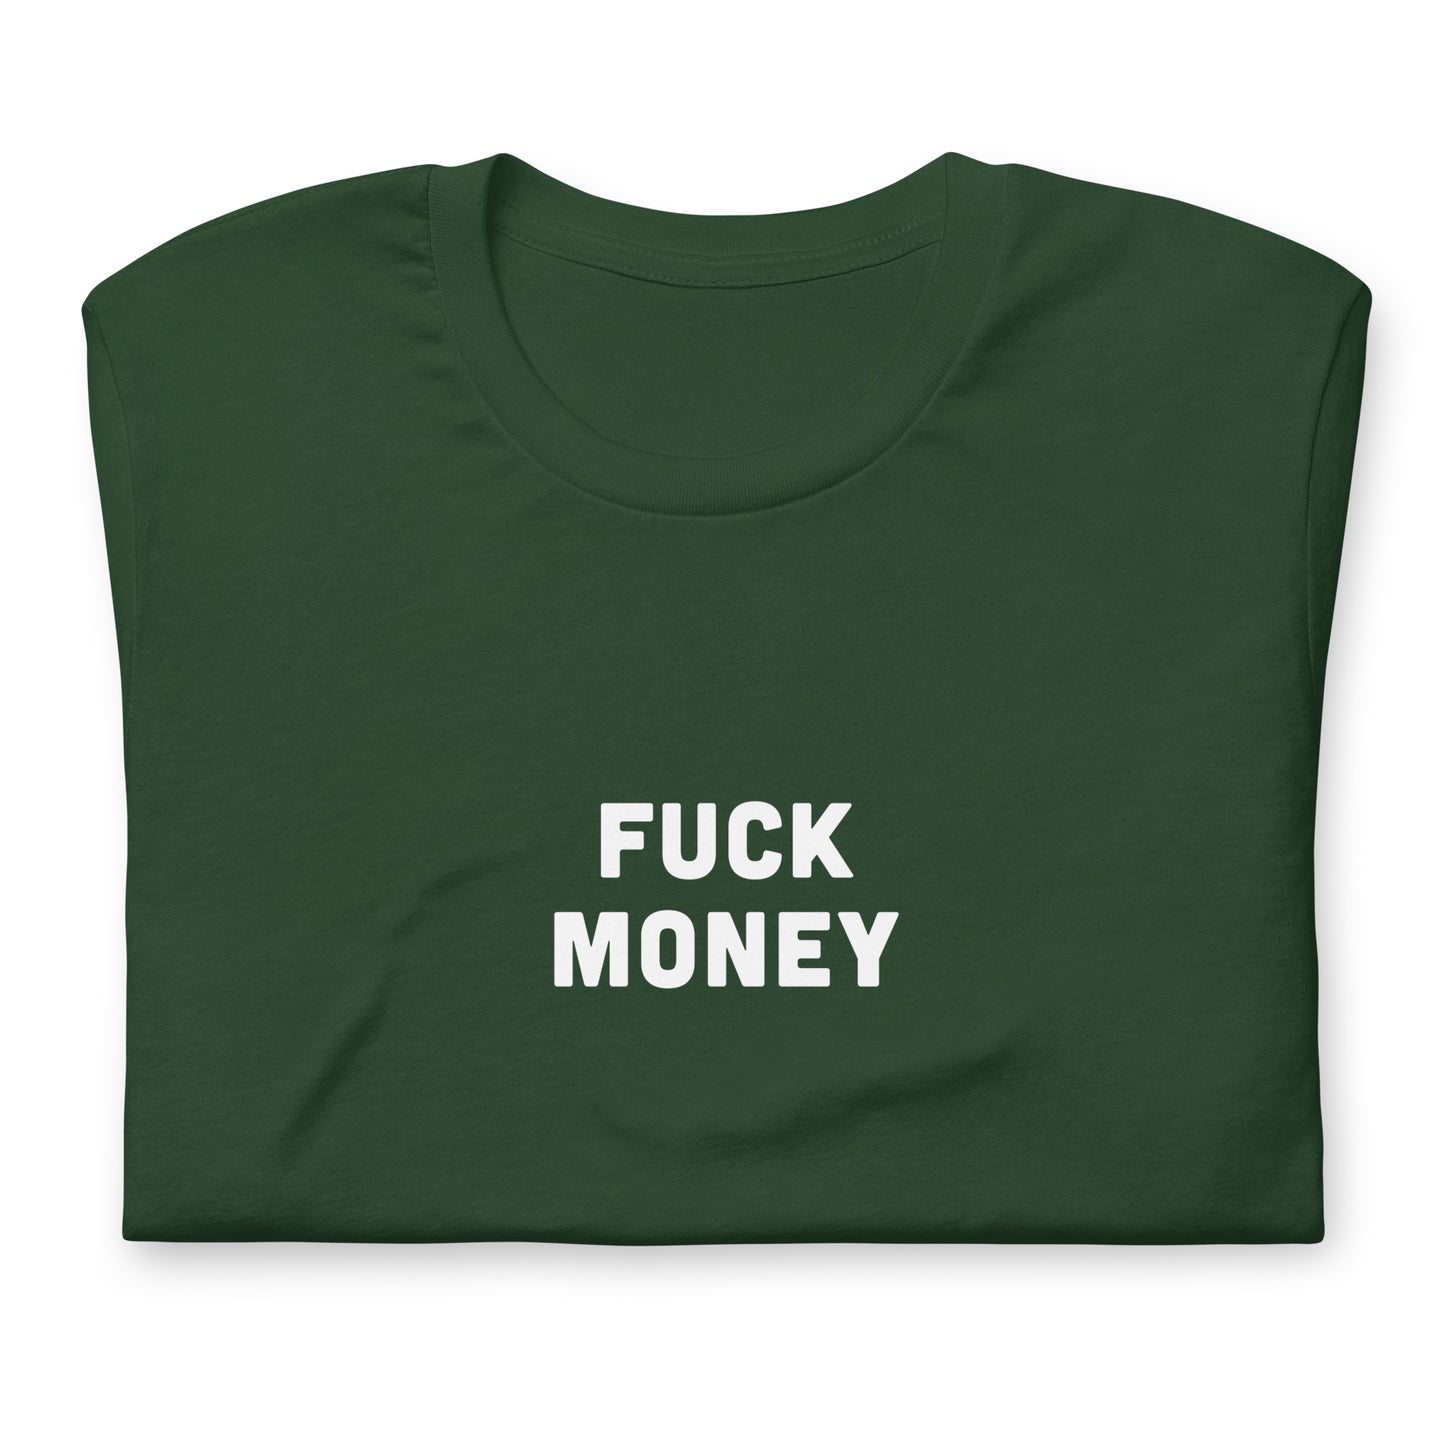 Fuck Money T-Shirt Size XL Color Black